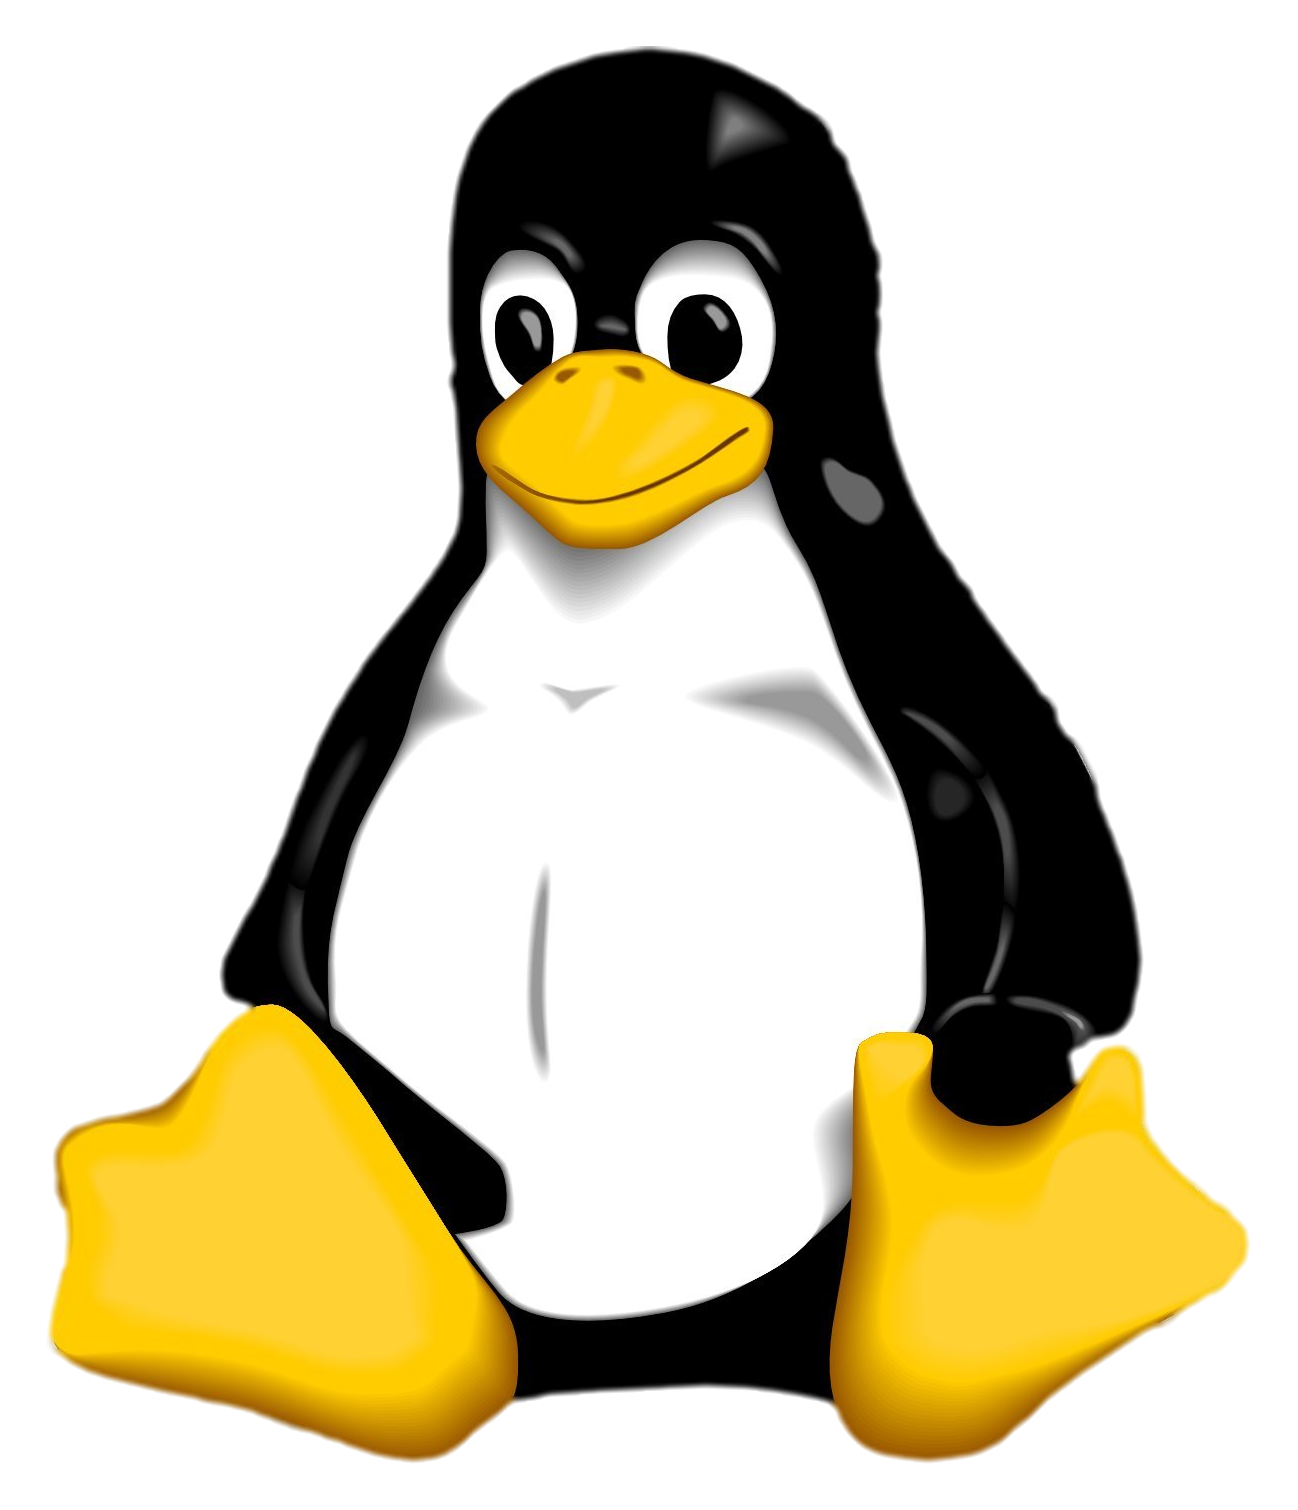 Linux kernel.png